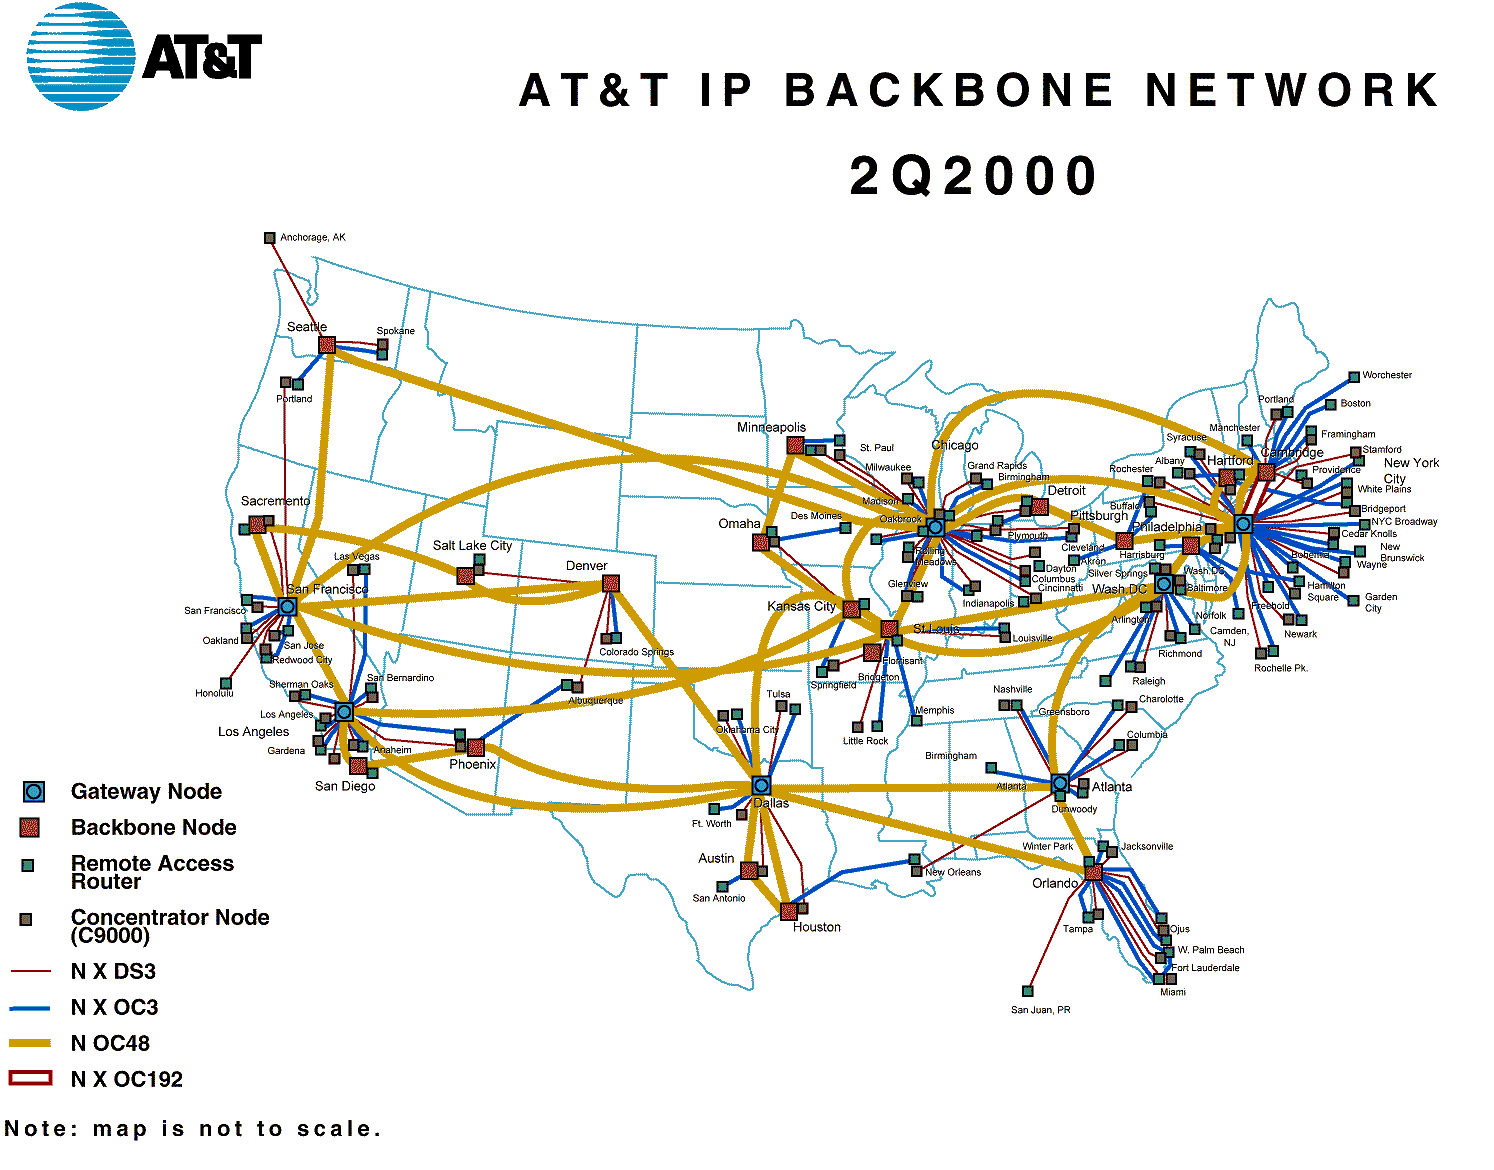 backbone network providers in domain name